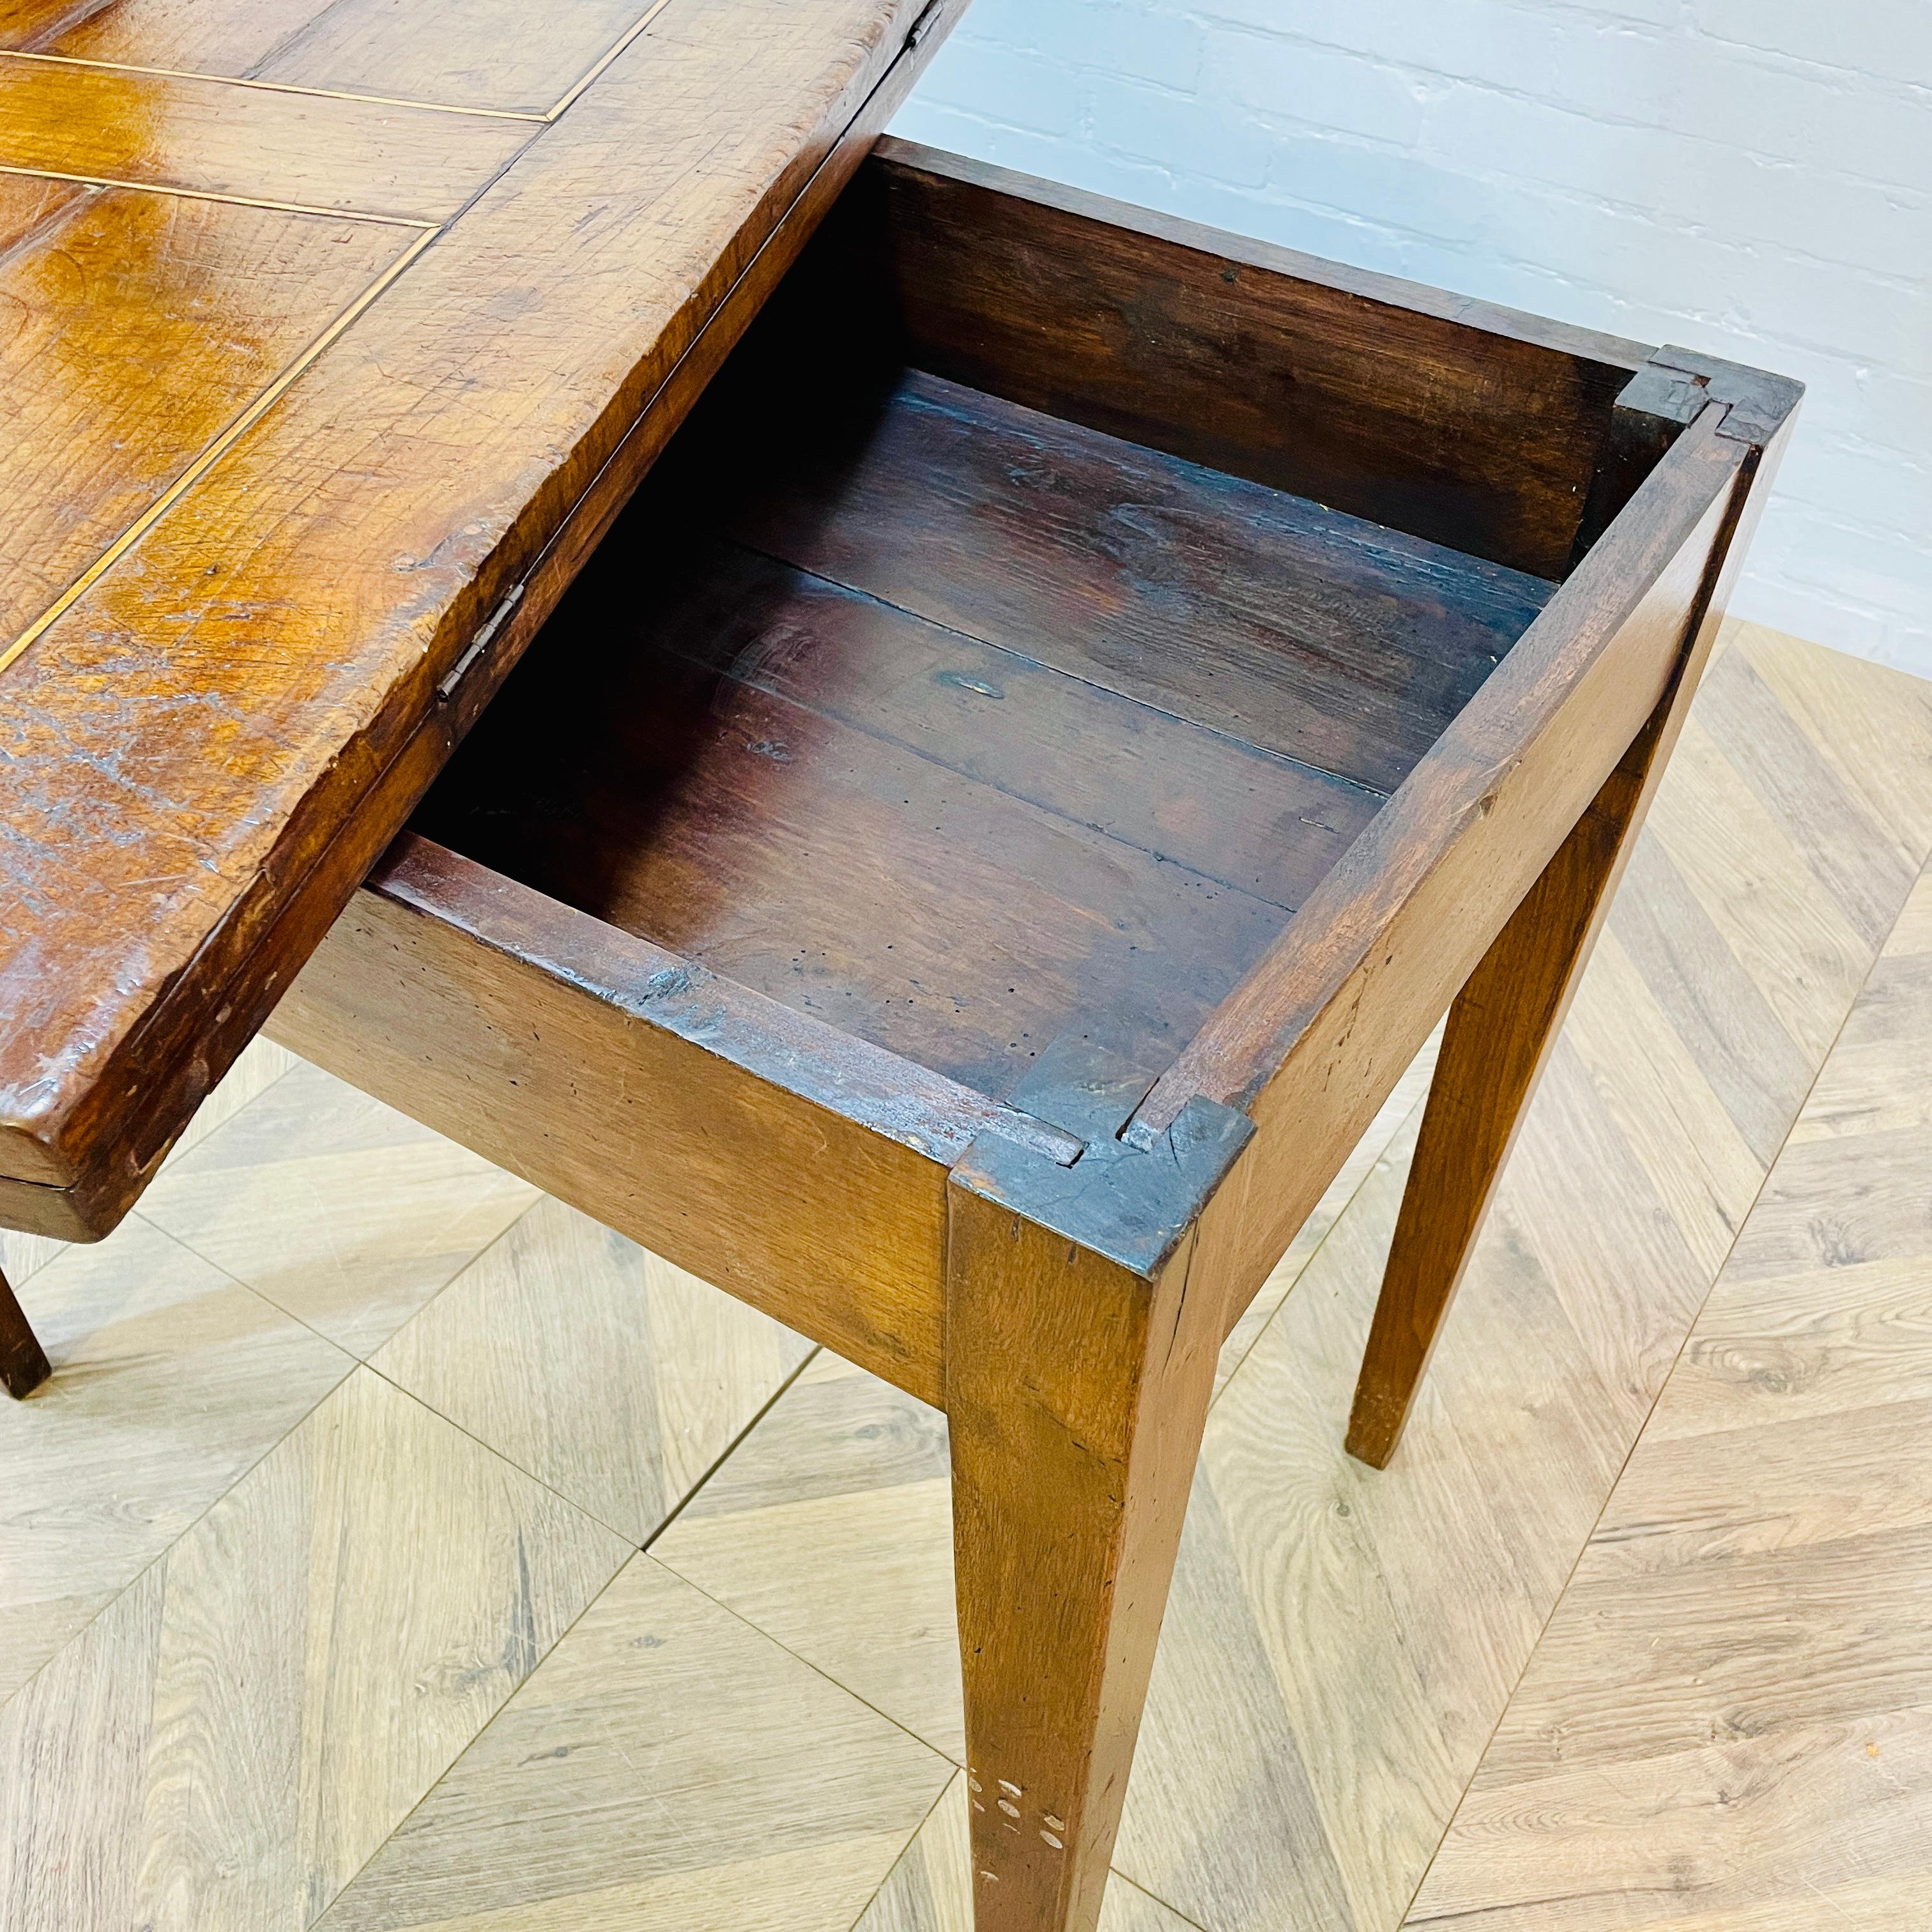 Charmante table à thé anglaise ancienne, d'époque géorgienne, vers les années 1790.

La table, fabriquée en acajou et d'une structure très solide, dispose d'un espace de rangement supplémentaire sous la table.

La table présente une patine